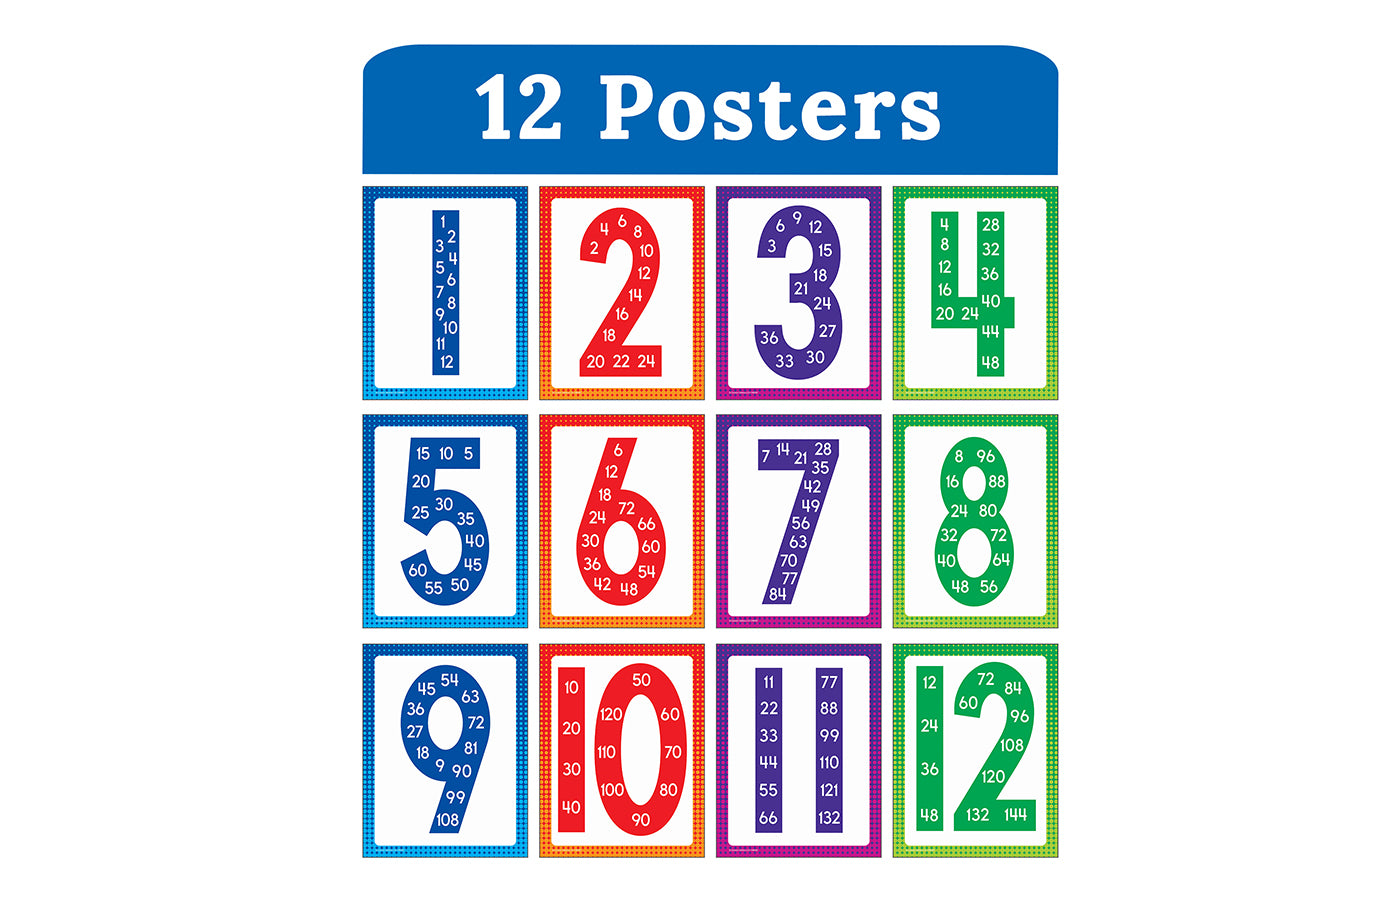 Posters maaltafels (12)